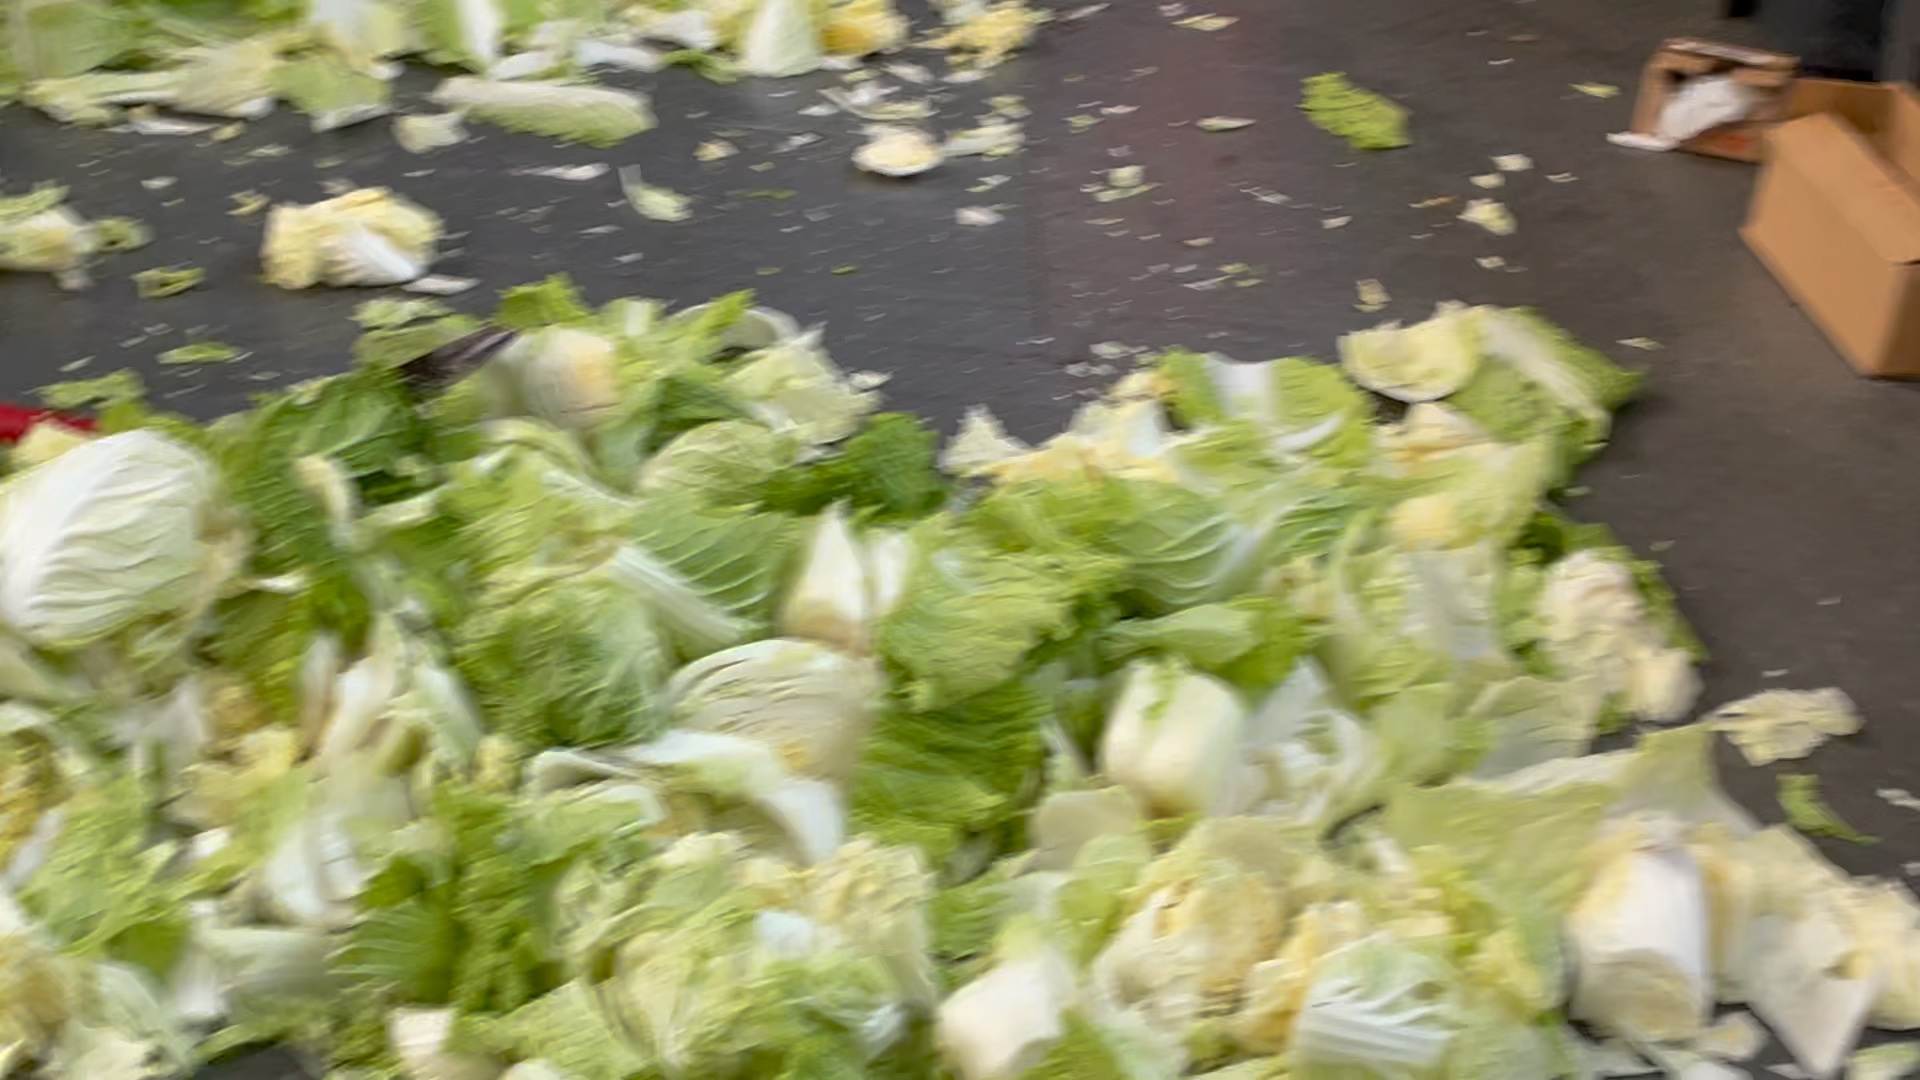 厨余垃圾不够！买了一堆白菜砍碎充垃圾：这就是北京海淀垃圾分类吗？群众来稿